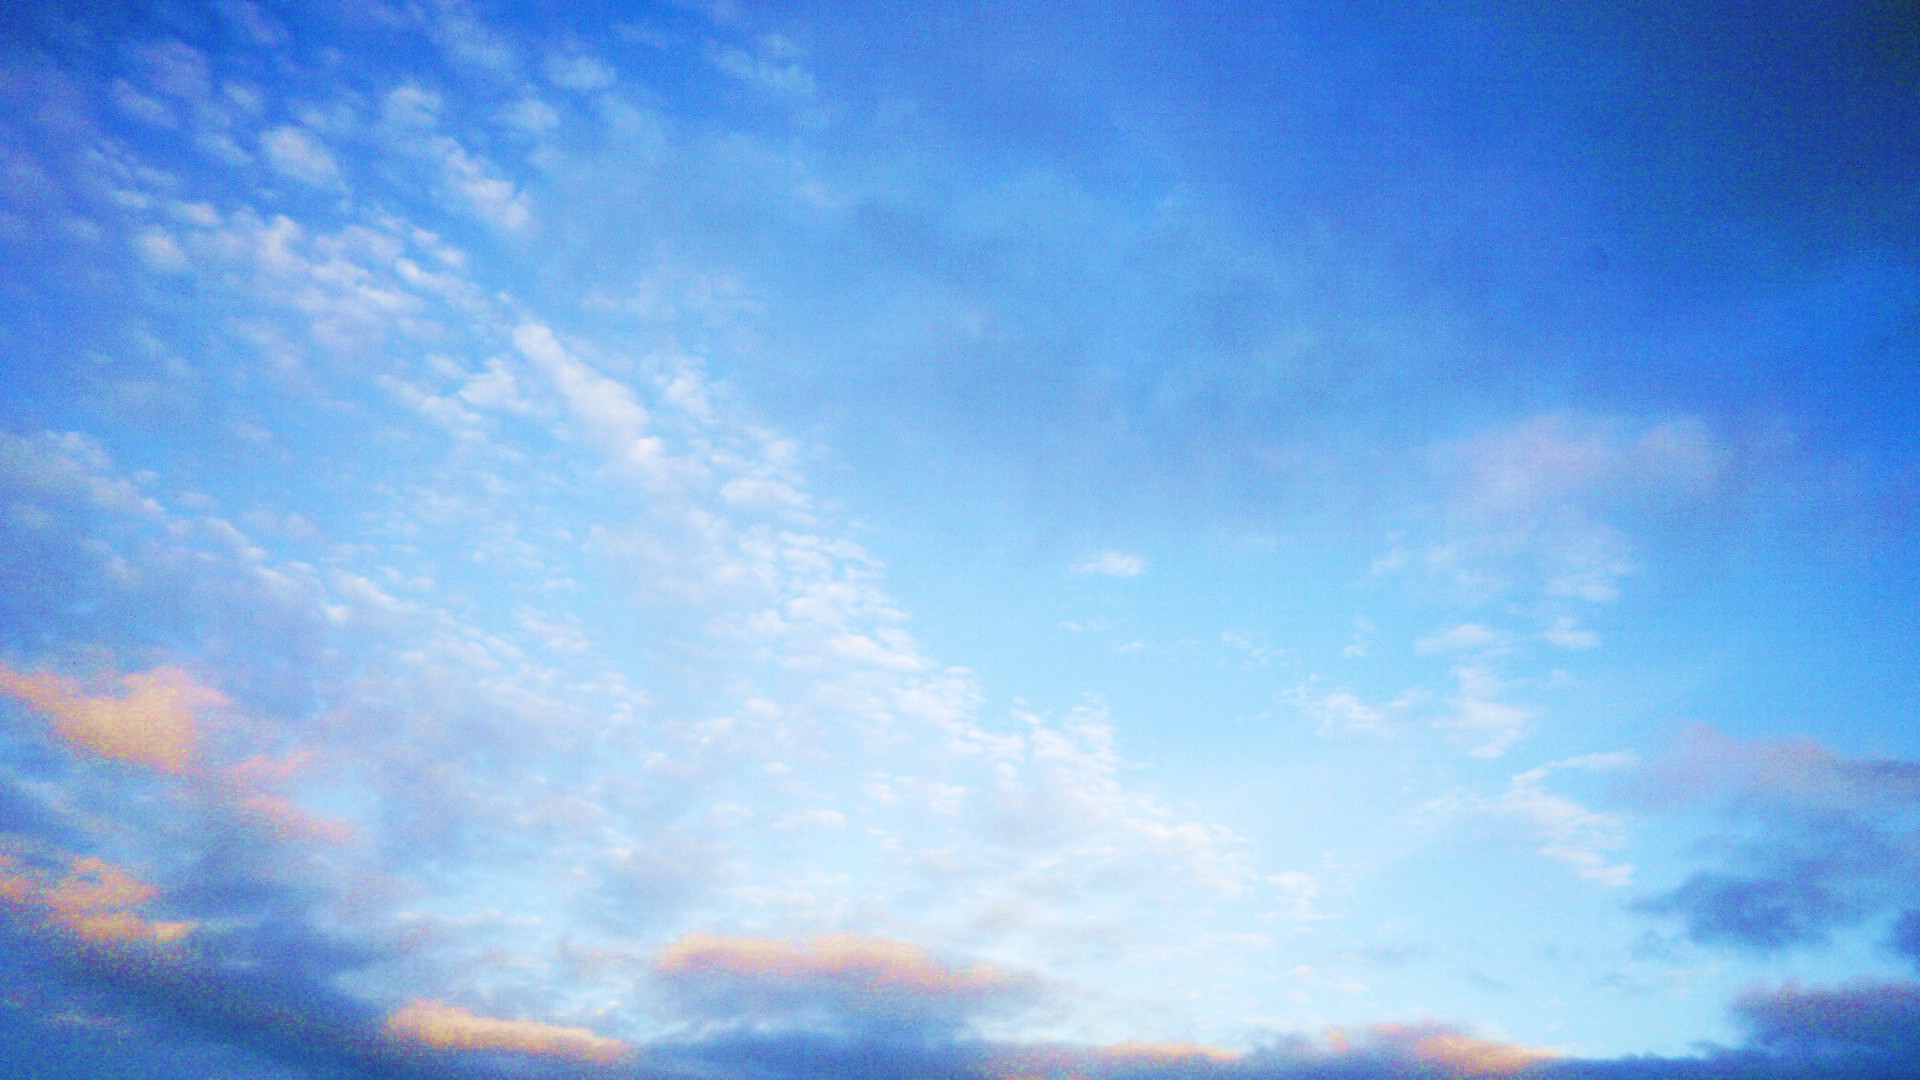 Blue Blue Sky by Niwaa on DeviantArt